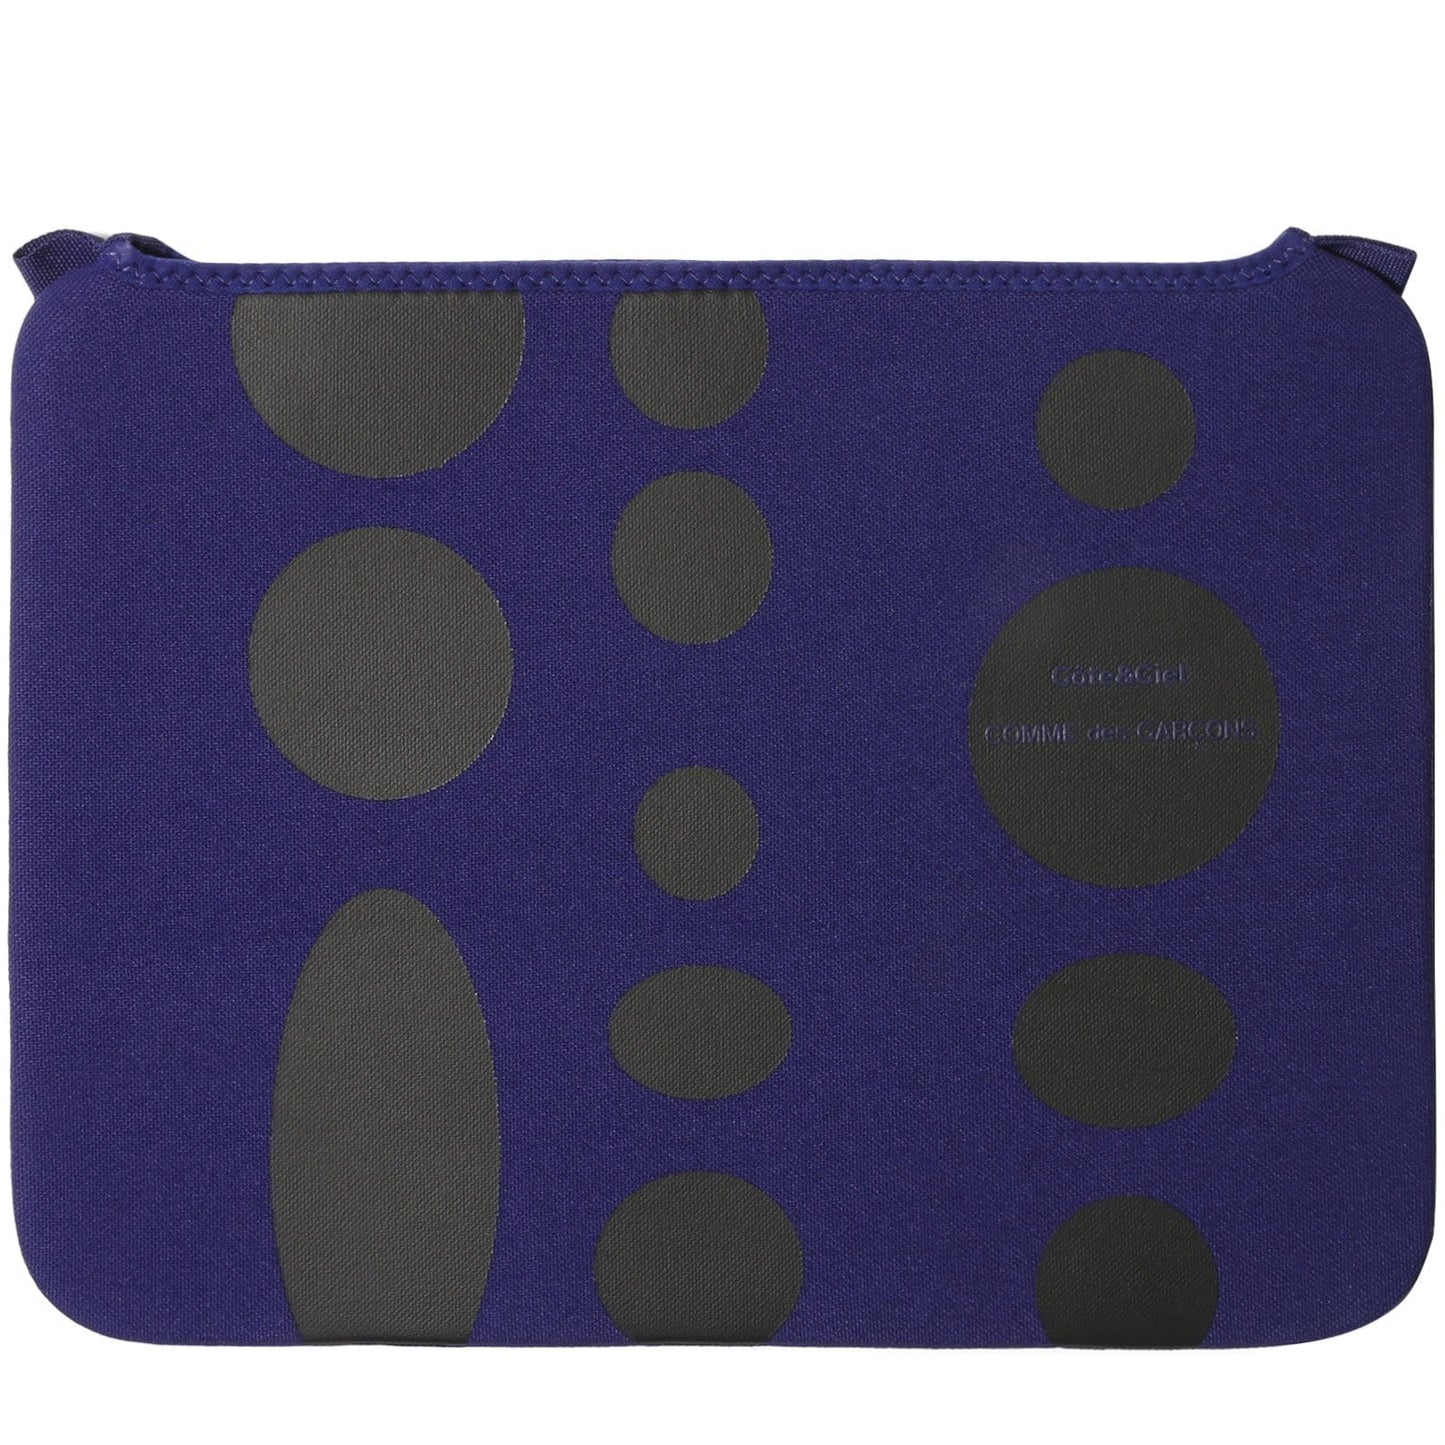 Comme Des Garçons Wallet Bags & Accessories BLUE / 13" x Cote & Ciel BLACK DOTS MACBOOK CASE 13"